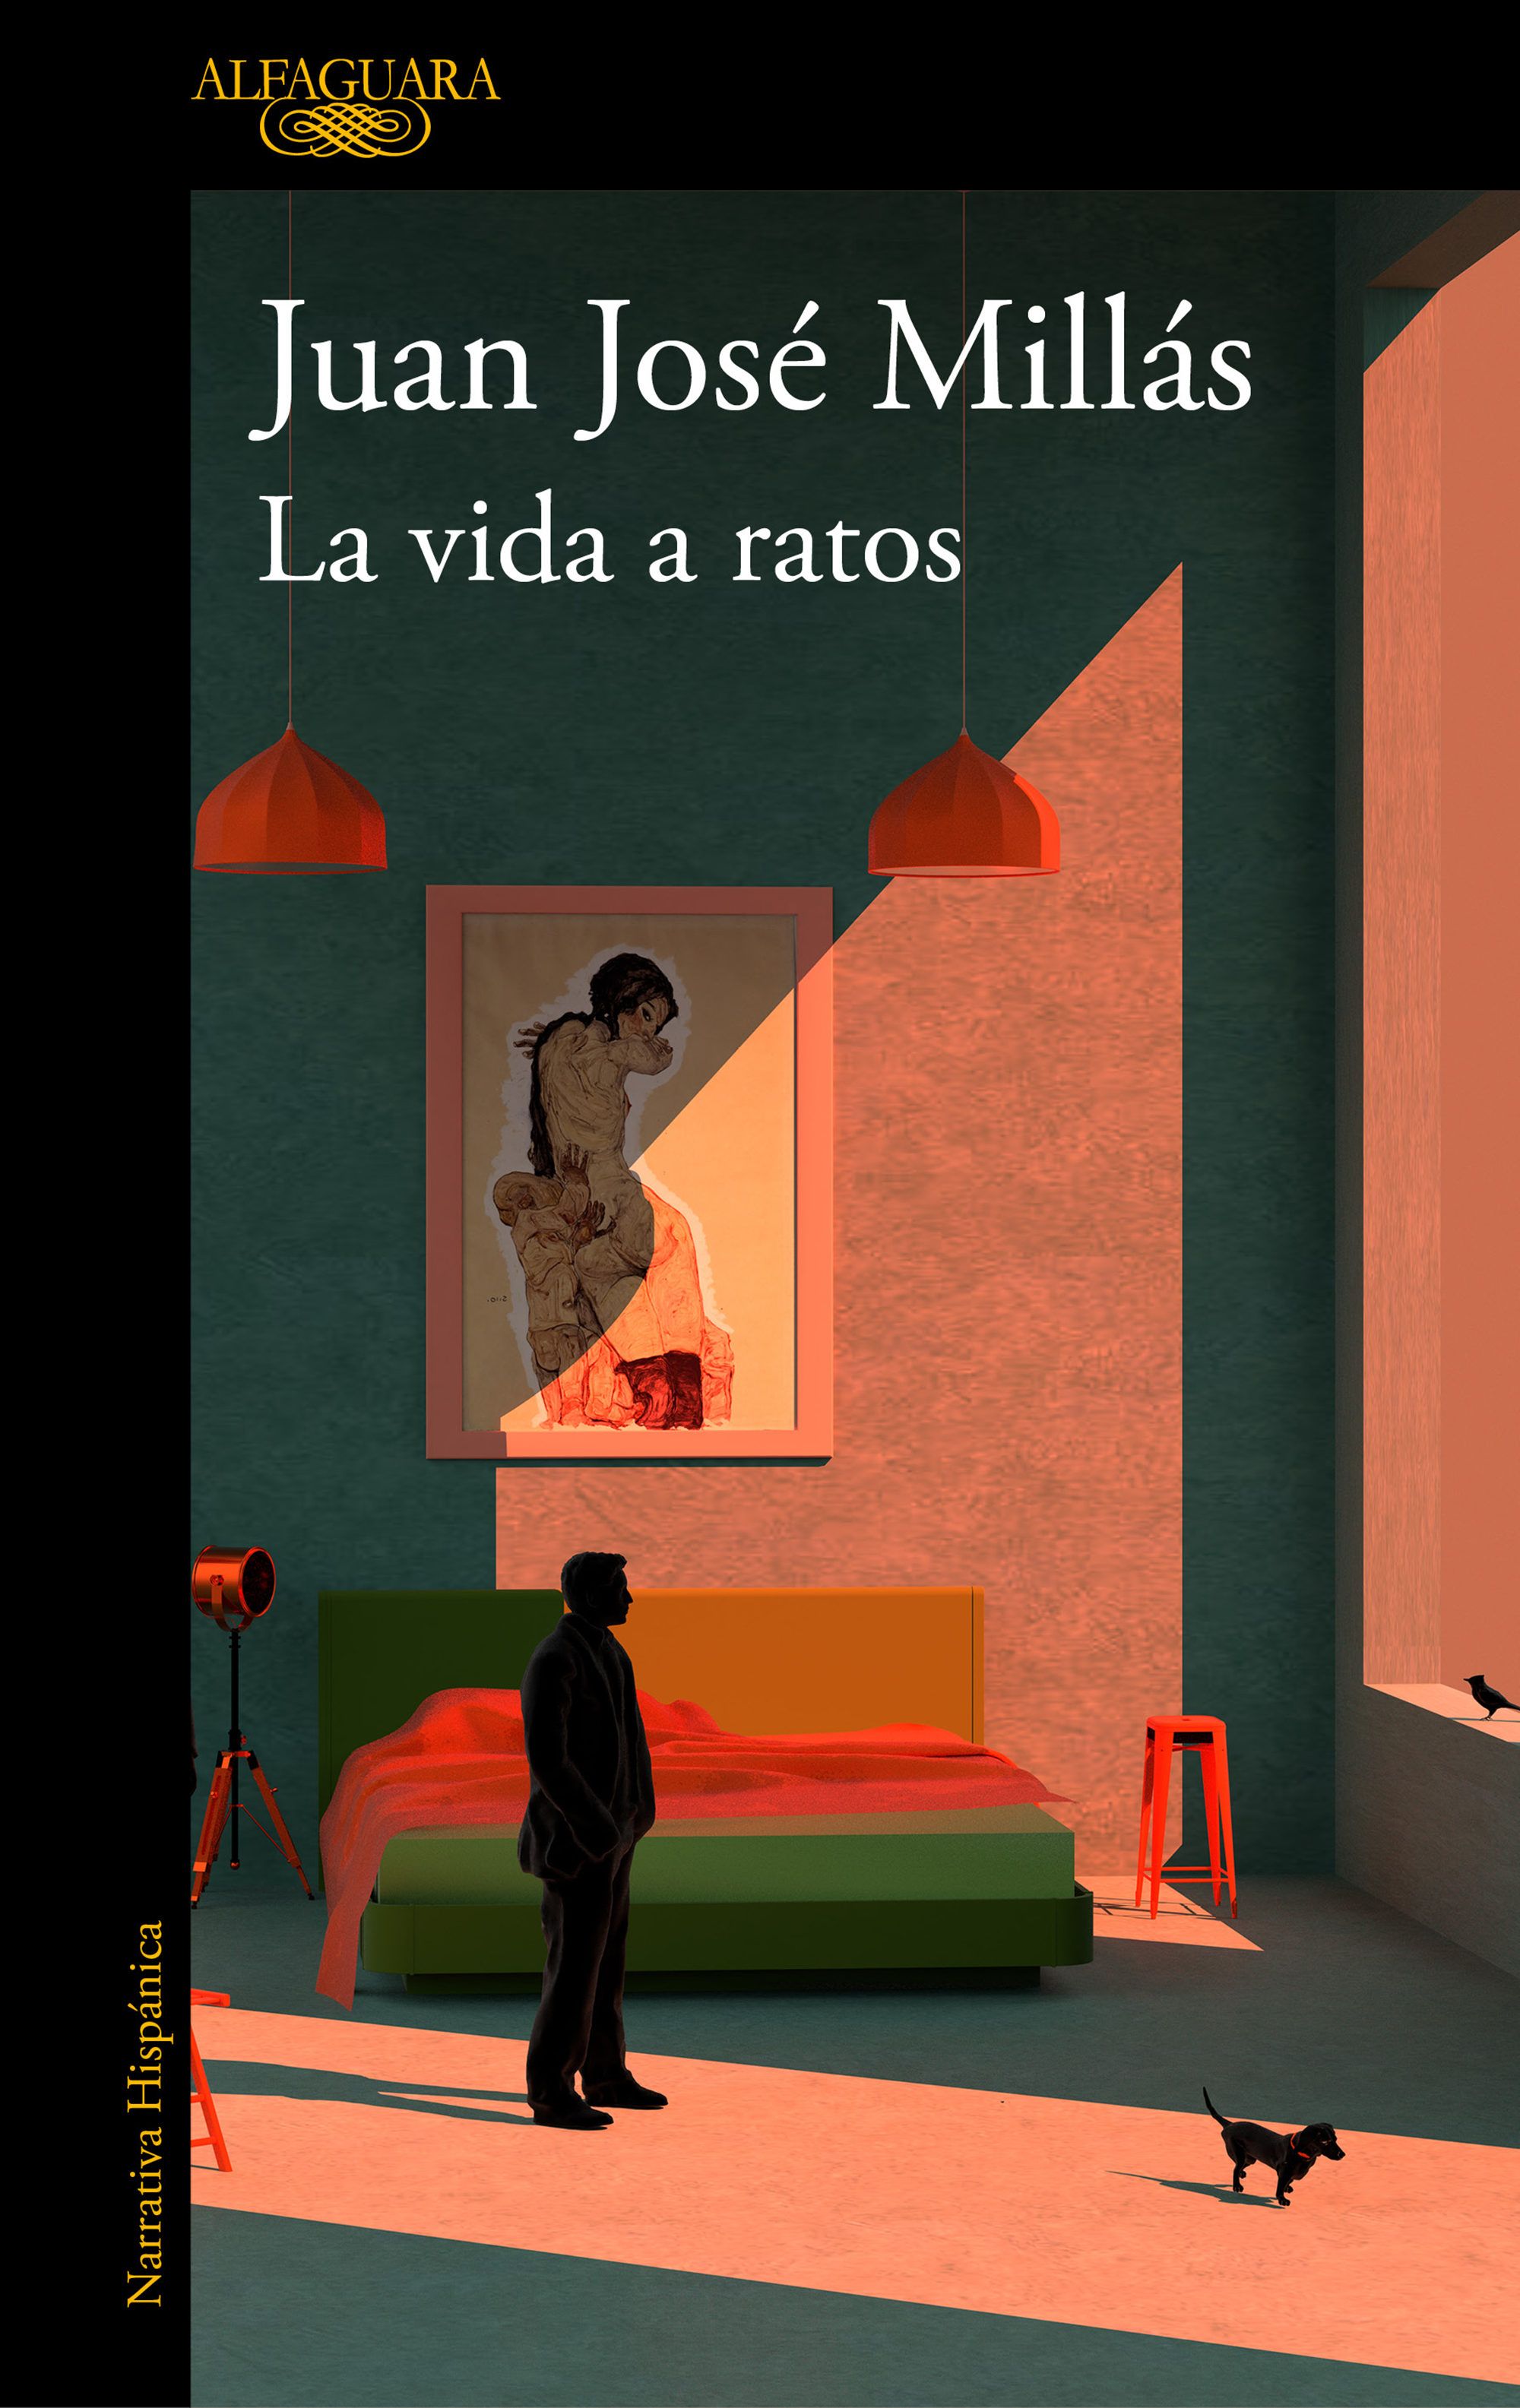 Portada de 'La vida a ratos' de Juan José Millás, novedad literaria de abril de 2019